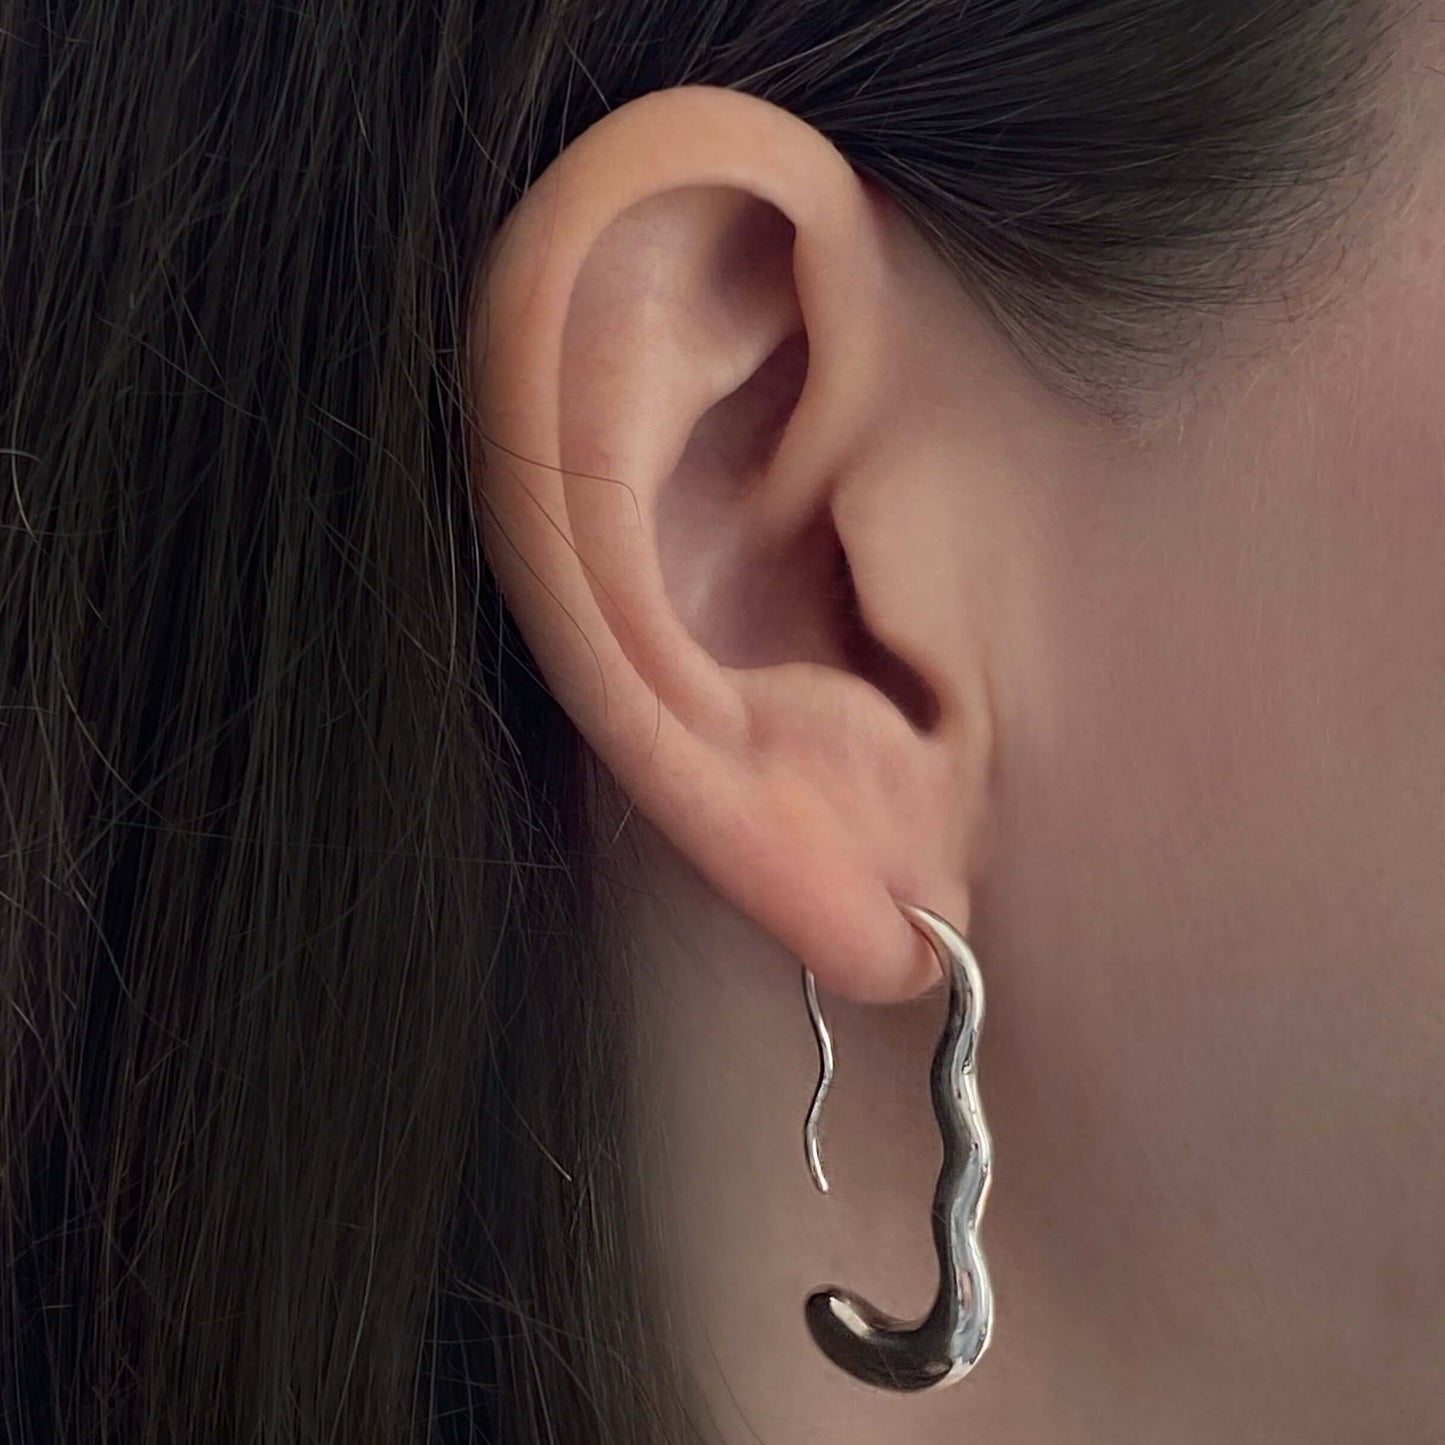 Ear with silver earring